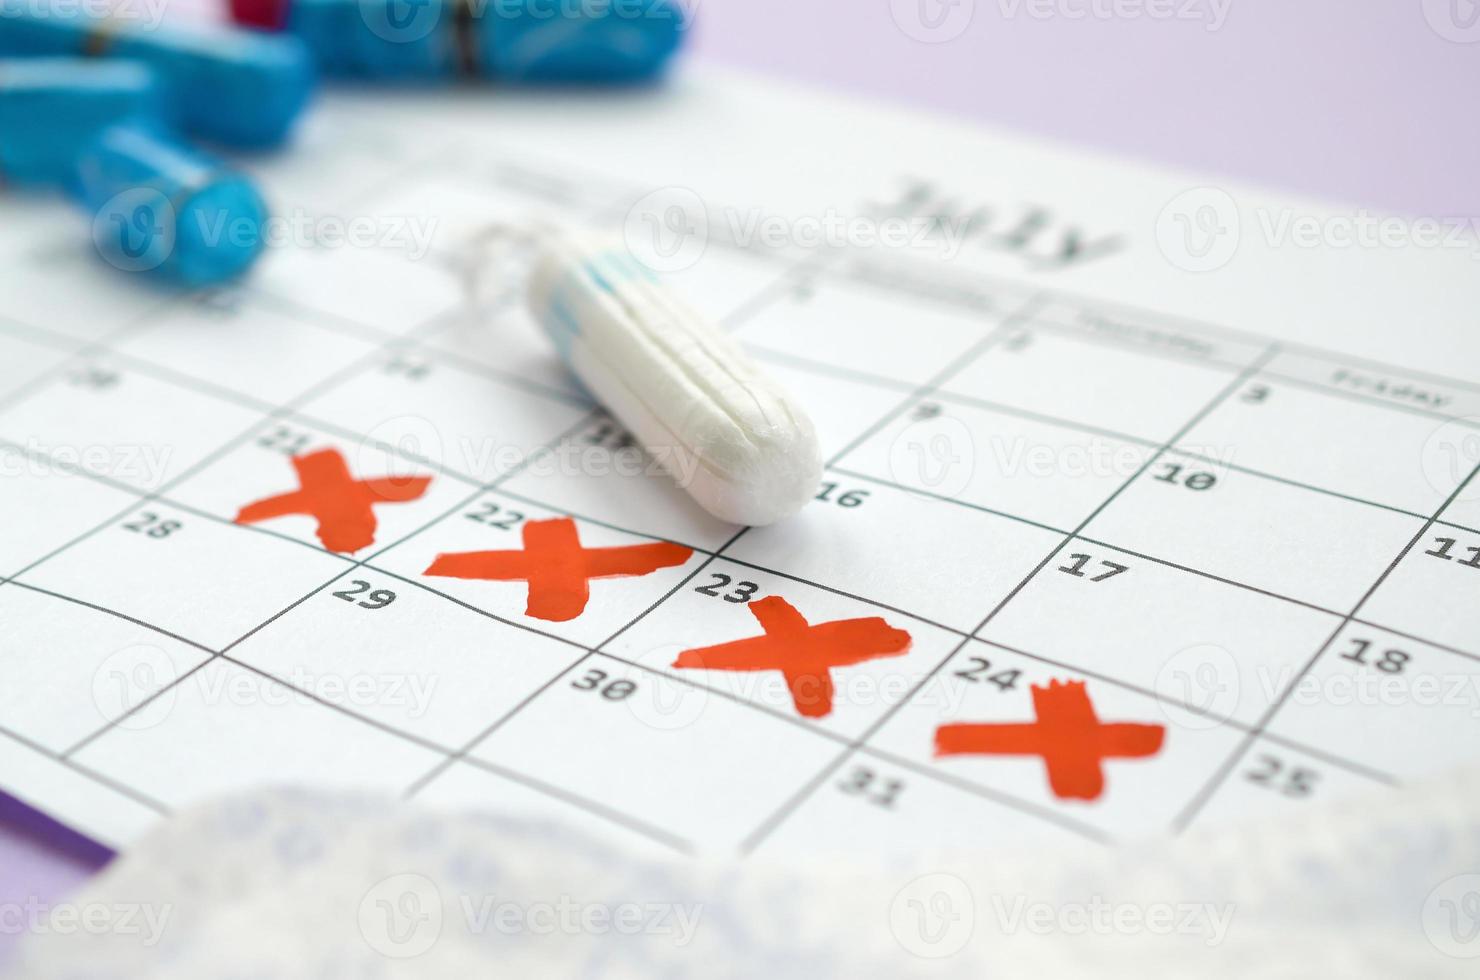 almohadillas menstruales y tampones en el calendario del período de menstruación con marcas de cruz roja sobre fondo lila foto